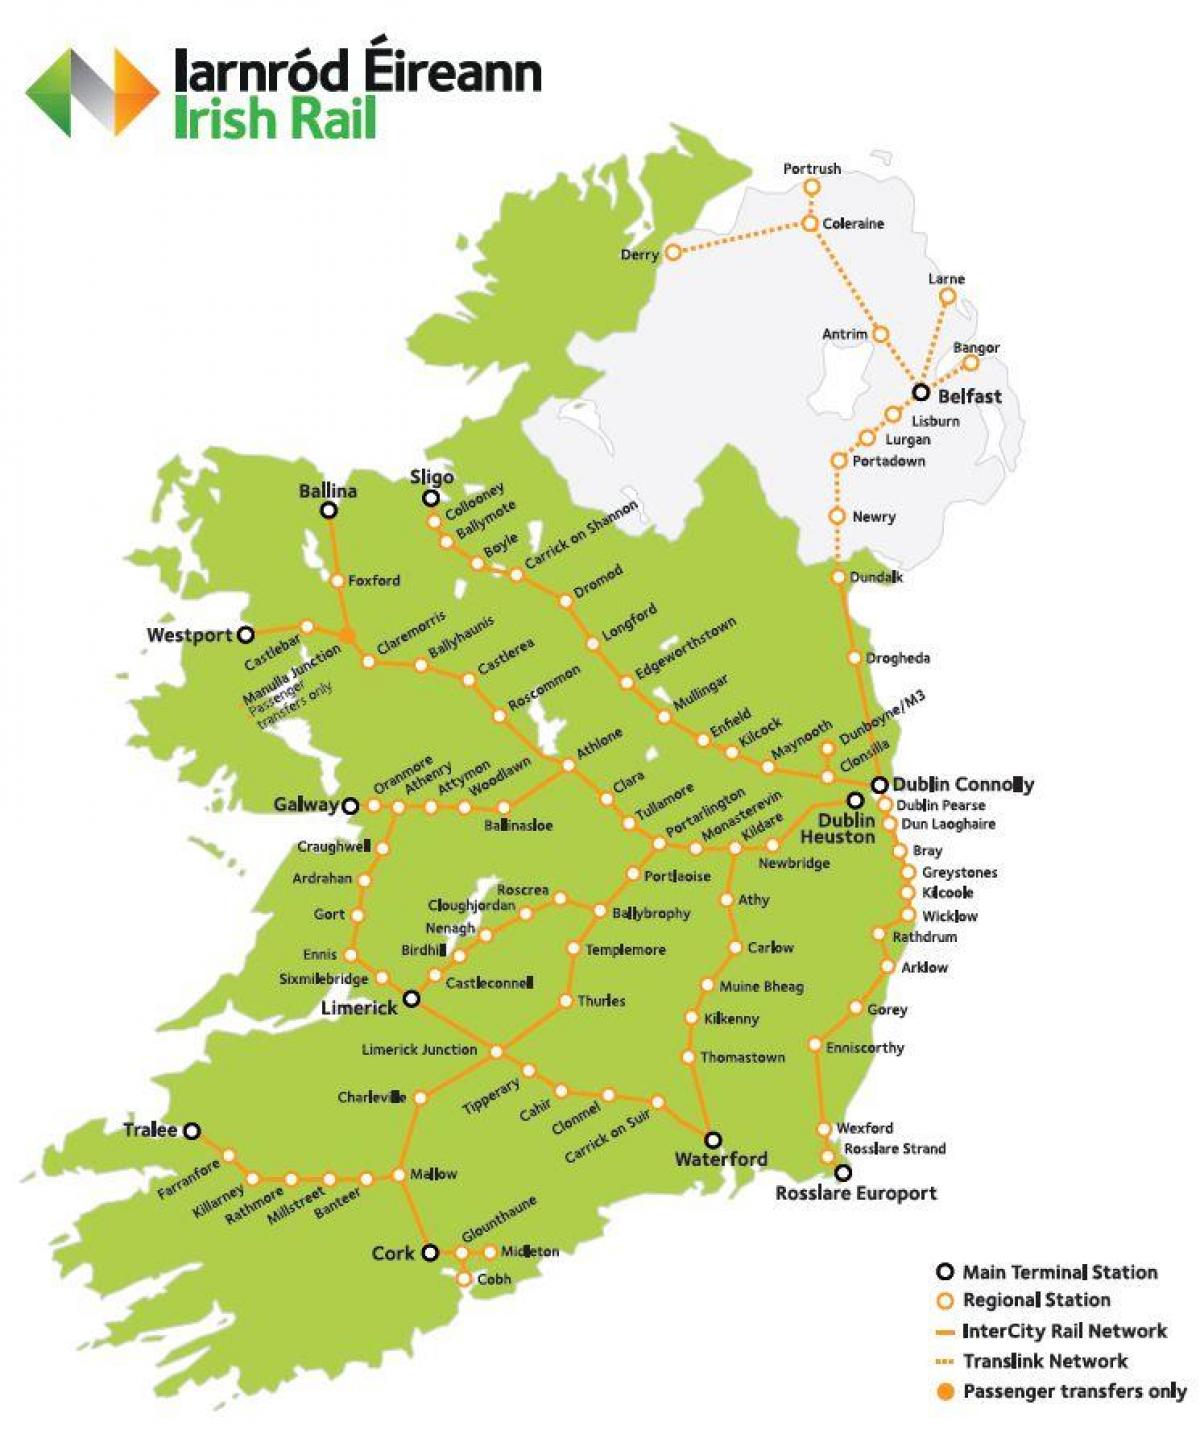 железопътен транспорт в Ирландия картата